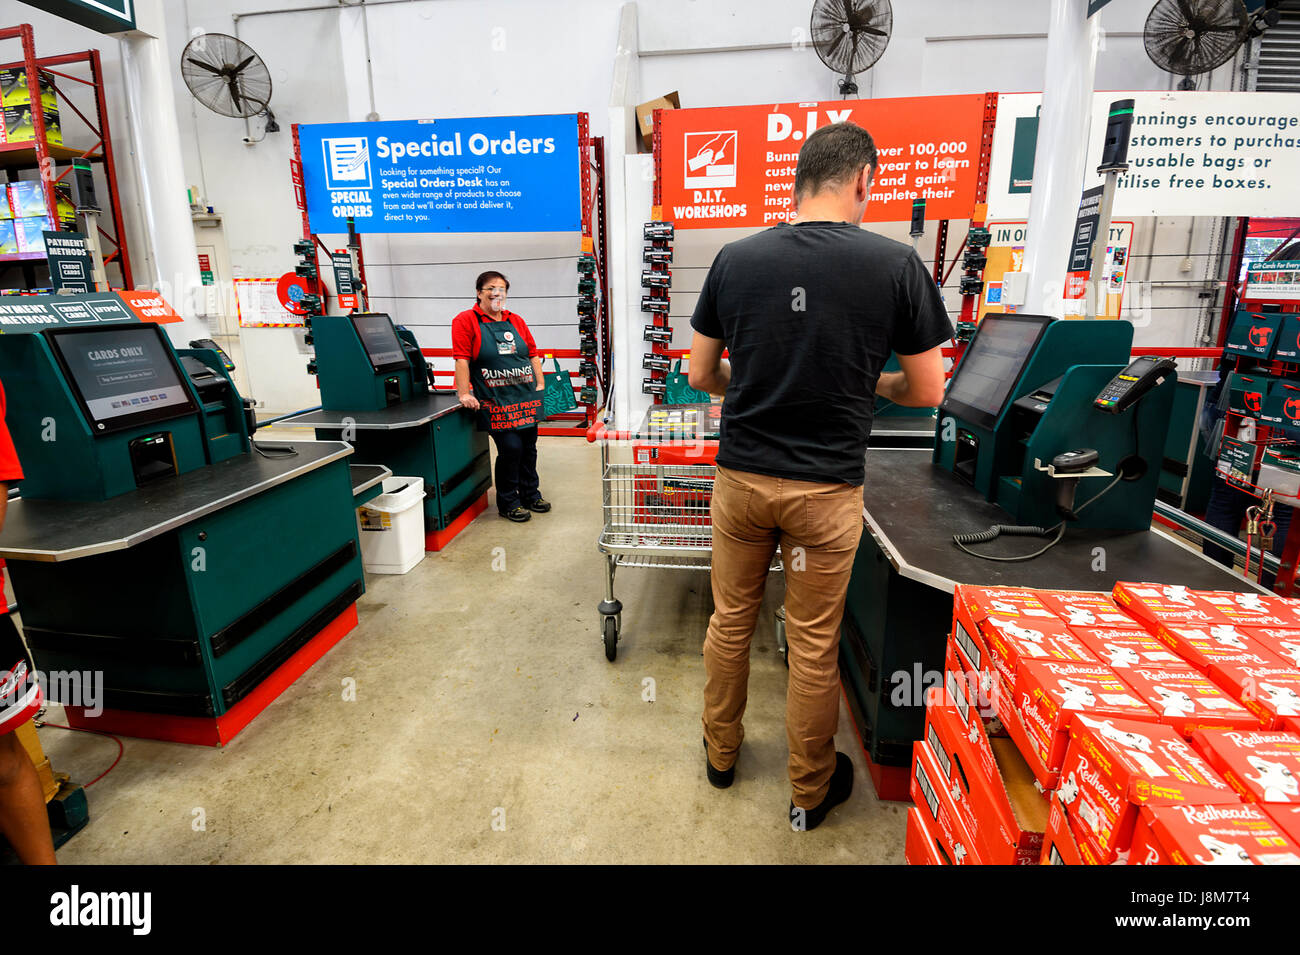 Kunden mit Self Checkout im Bunnings Lager, Wertaufbewahrungsmittel Hauptverbesserungen Shellharbour, New-South.Wales, NSW, Australien Stockfoto